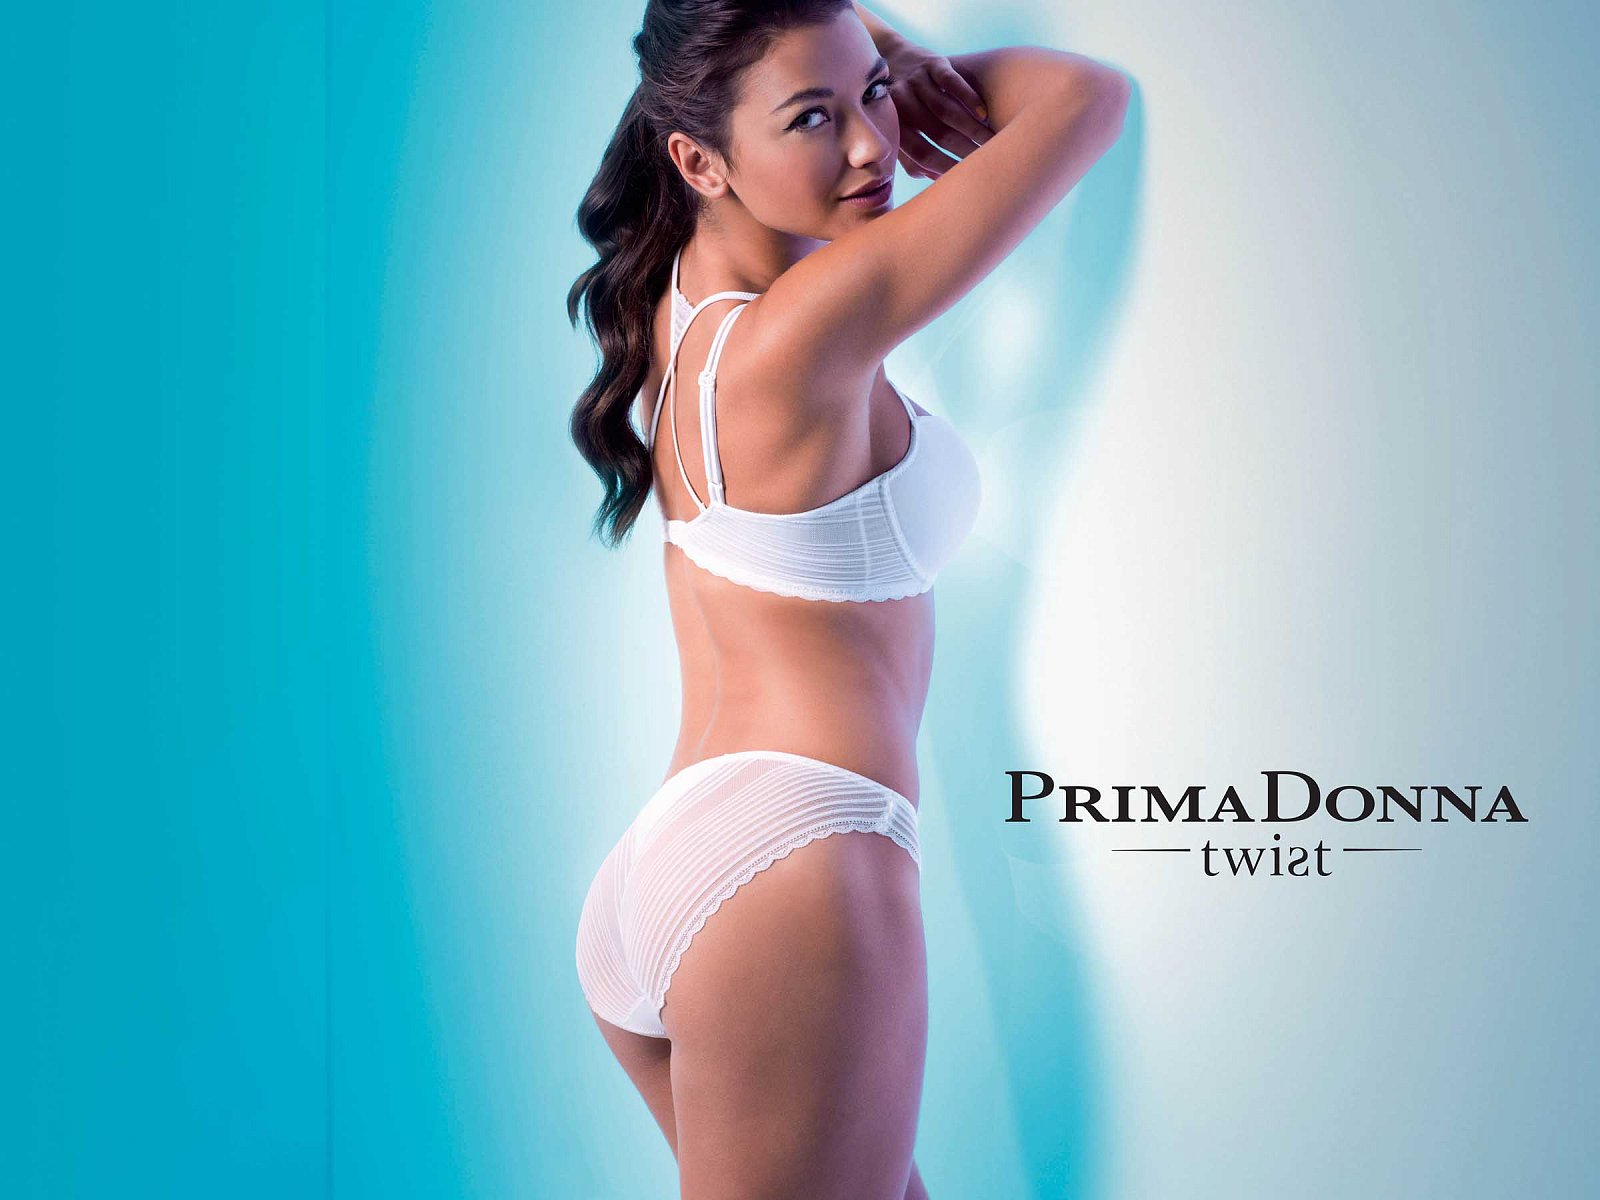 Primadonna Twist Printemps-été 2014 - Lingerie - 1